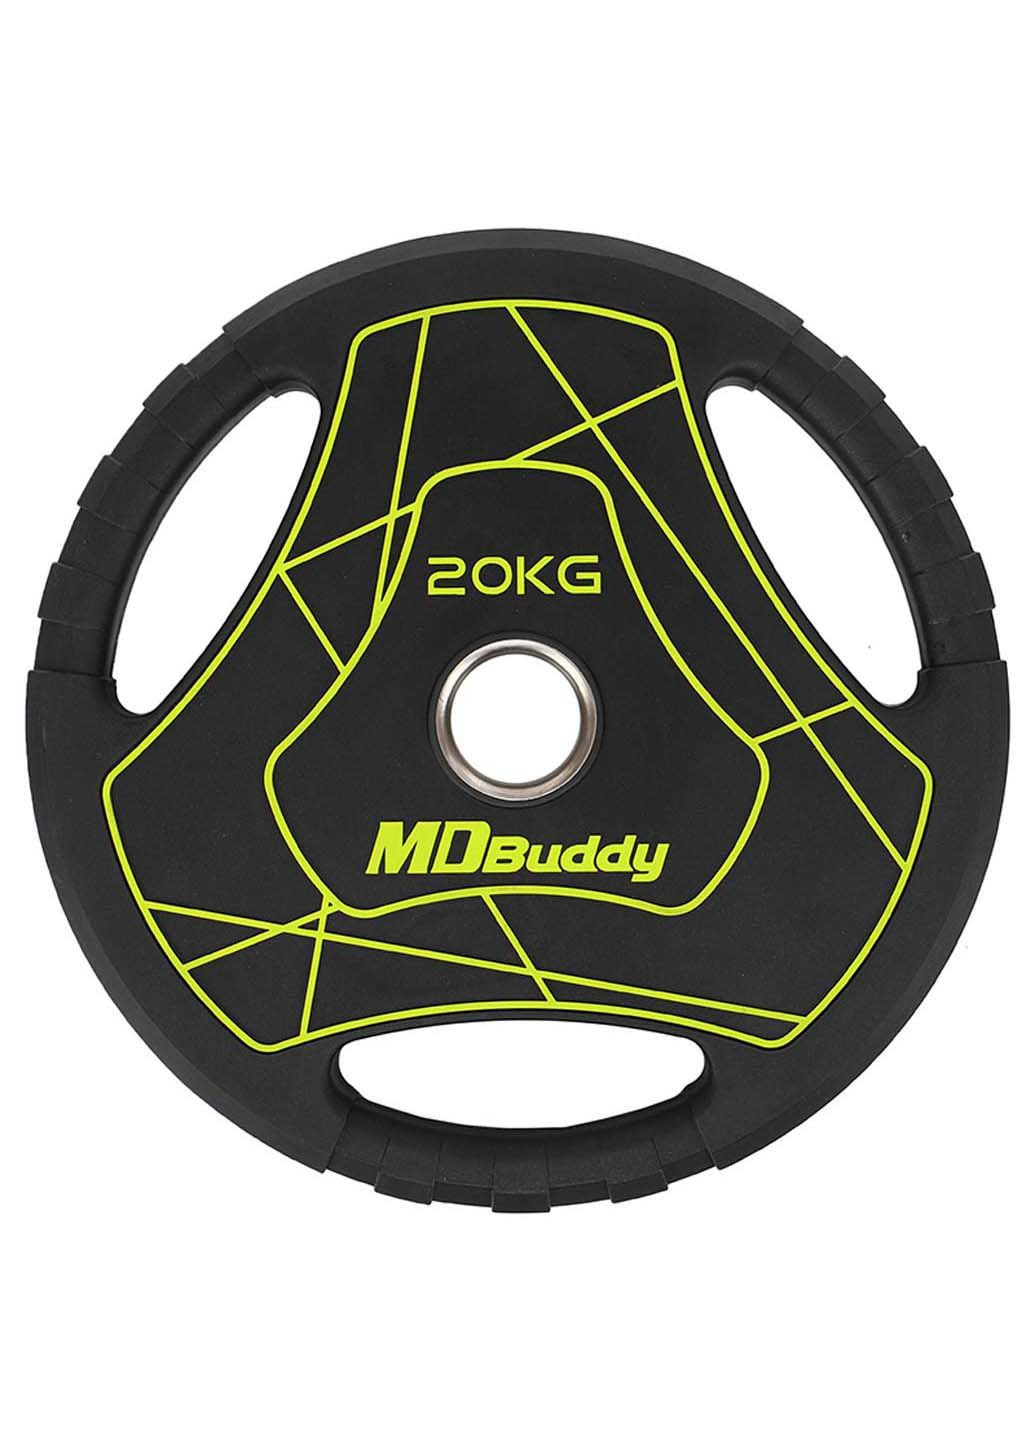 Млинці диски TA-9647 20 кг MDbuddy (286043868)